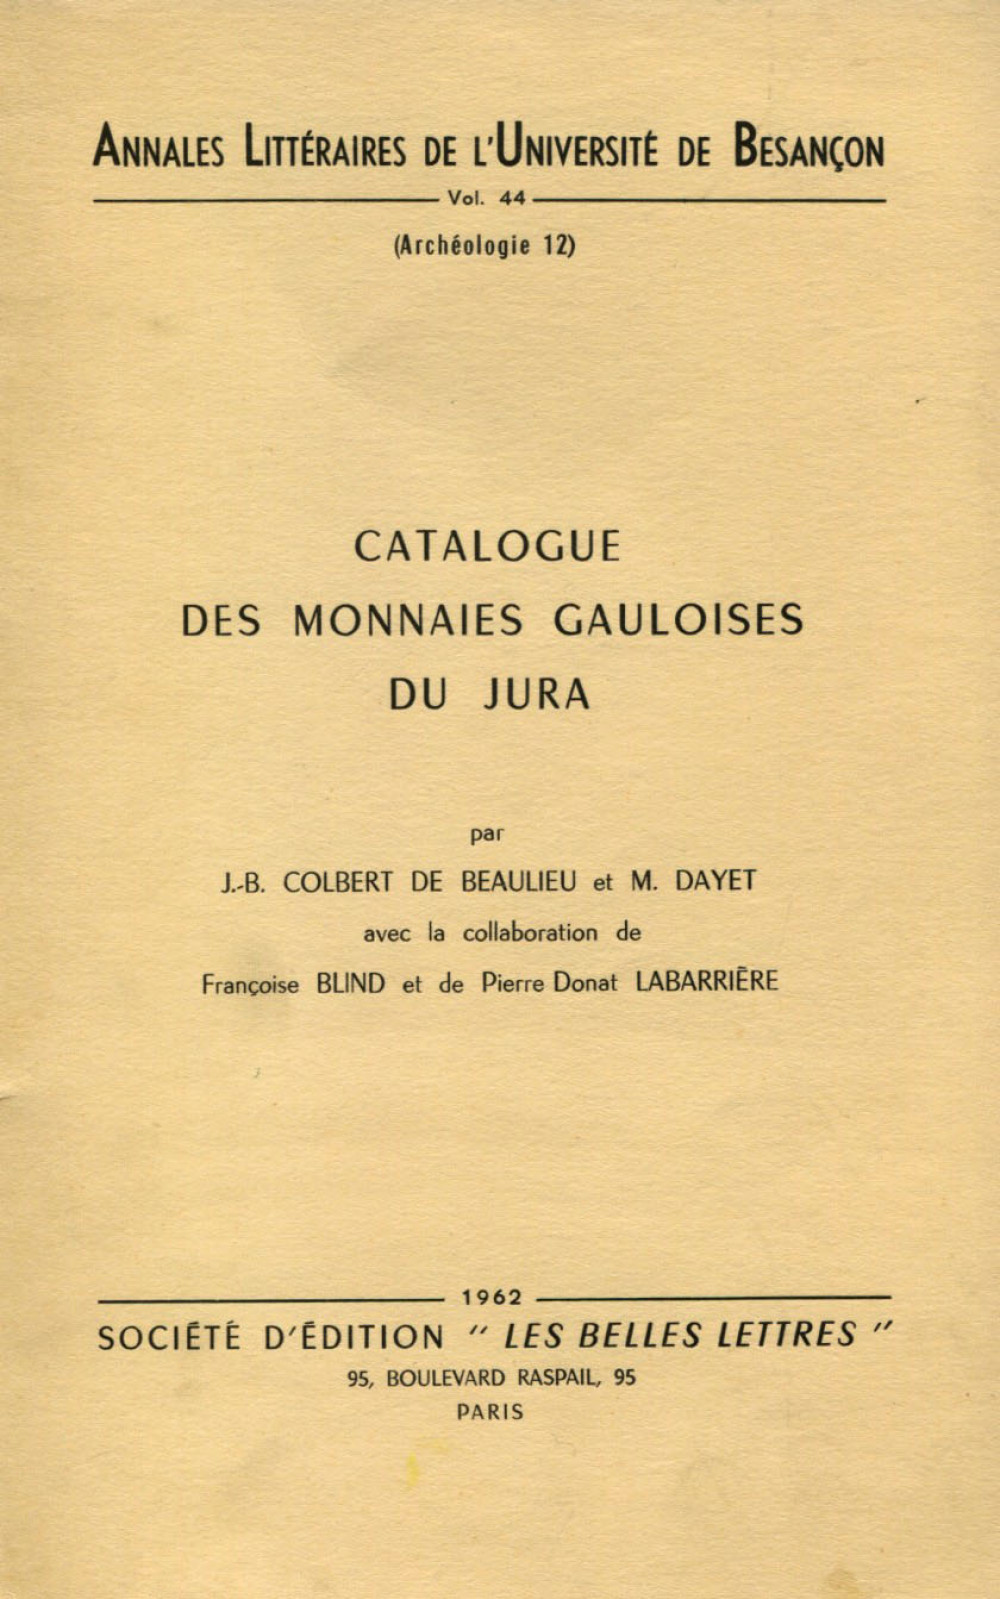 Catalogue des monnaies gauloises du Jura